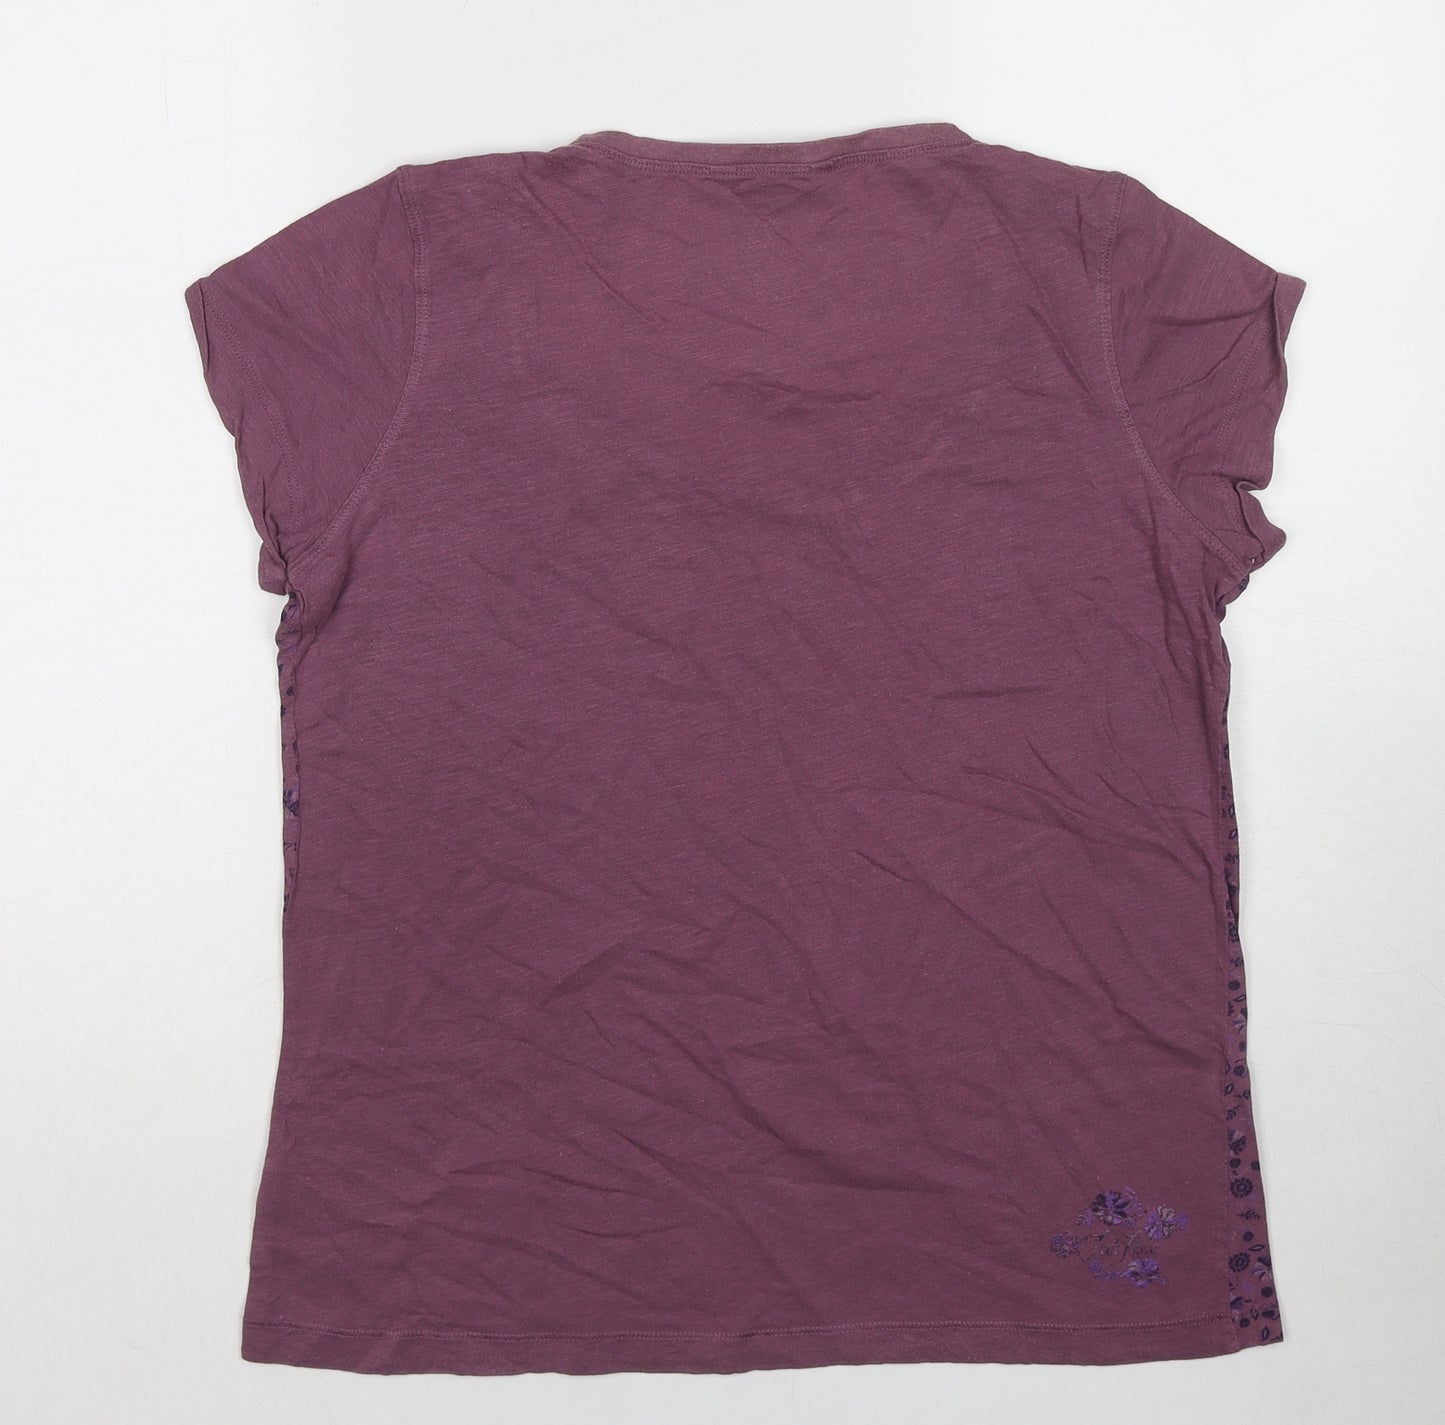 Fat Face Womens Purple Floral Cotton Basic T-Shirt Size 10 Scoop Neck